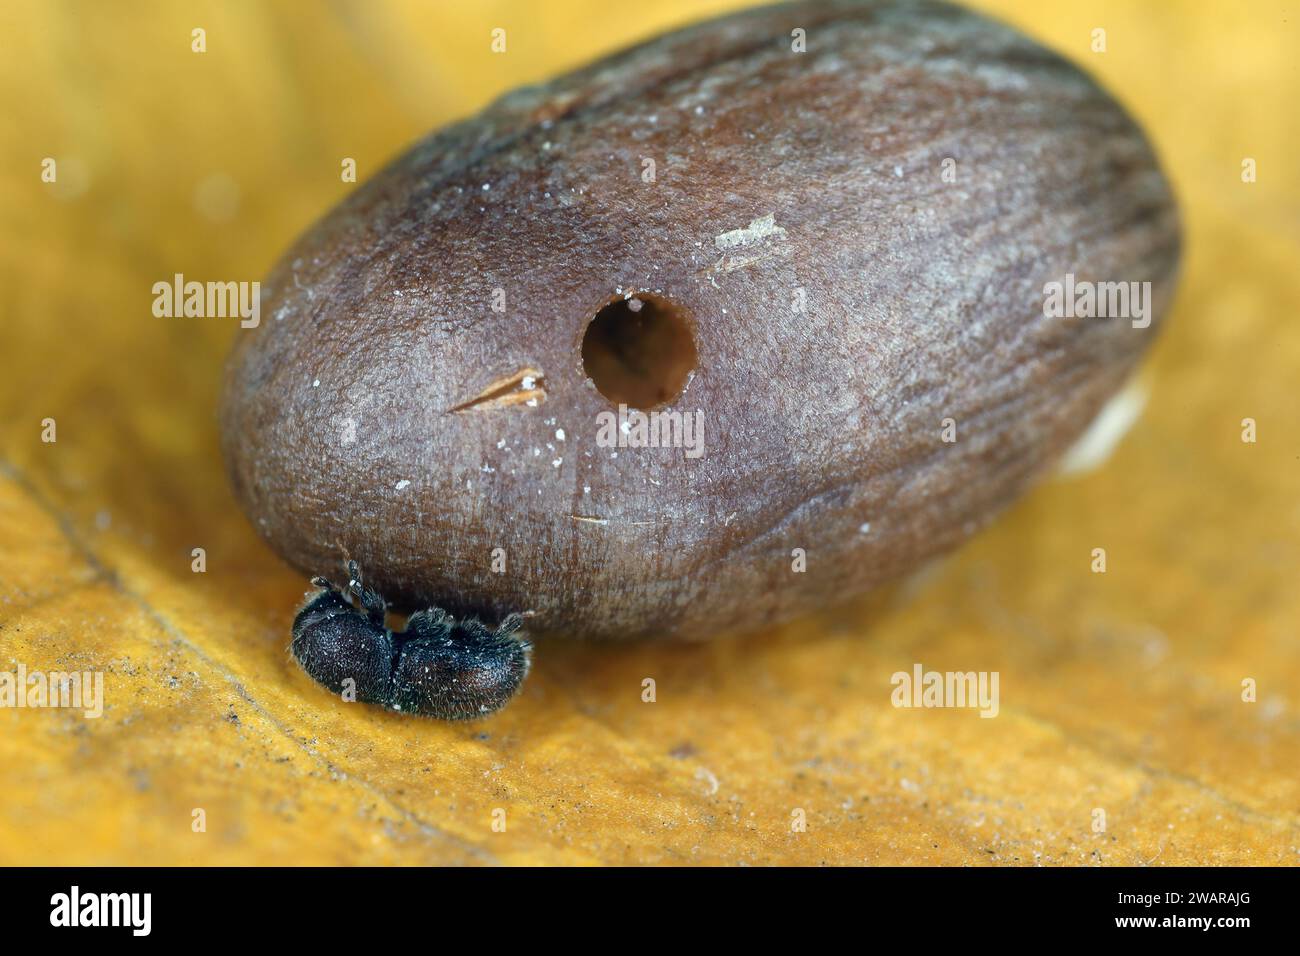 Alesatore per semi di palma (Coccotrypes dactyliperda). È uno scarabeo di corteccia che distrugge i semi di palma da dattero e altre palme. Foto Stock